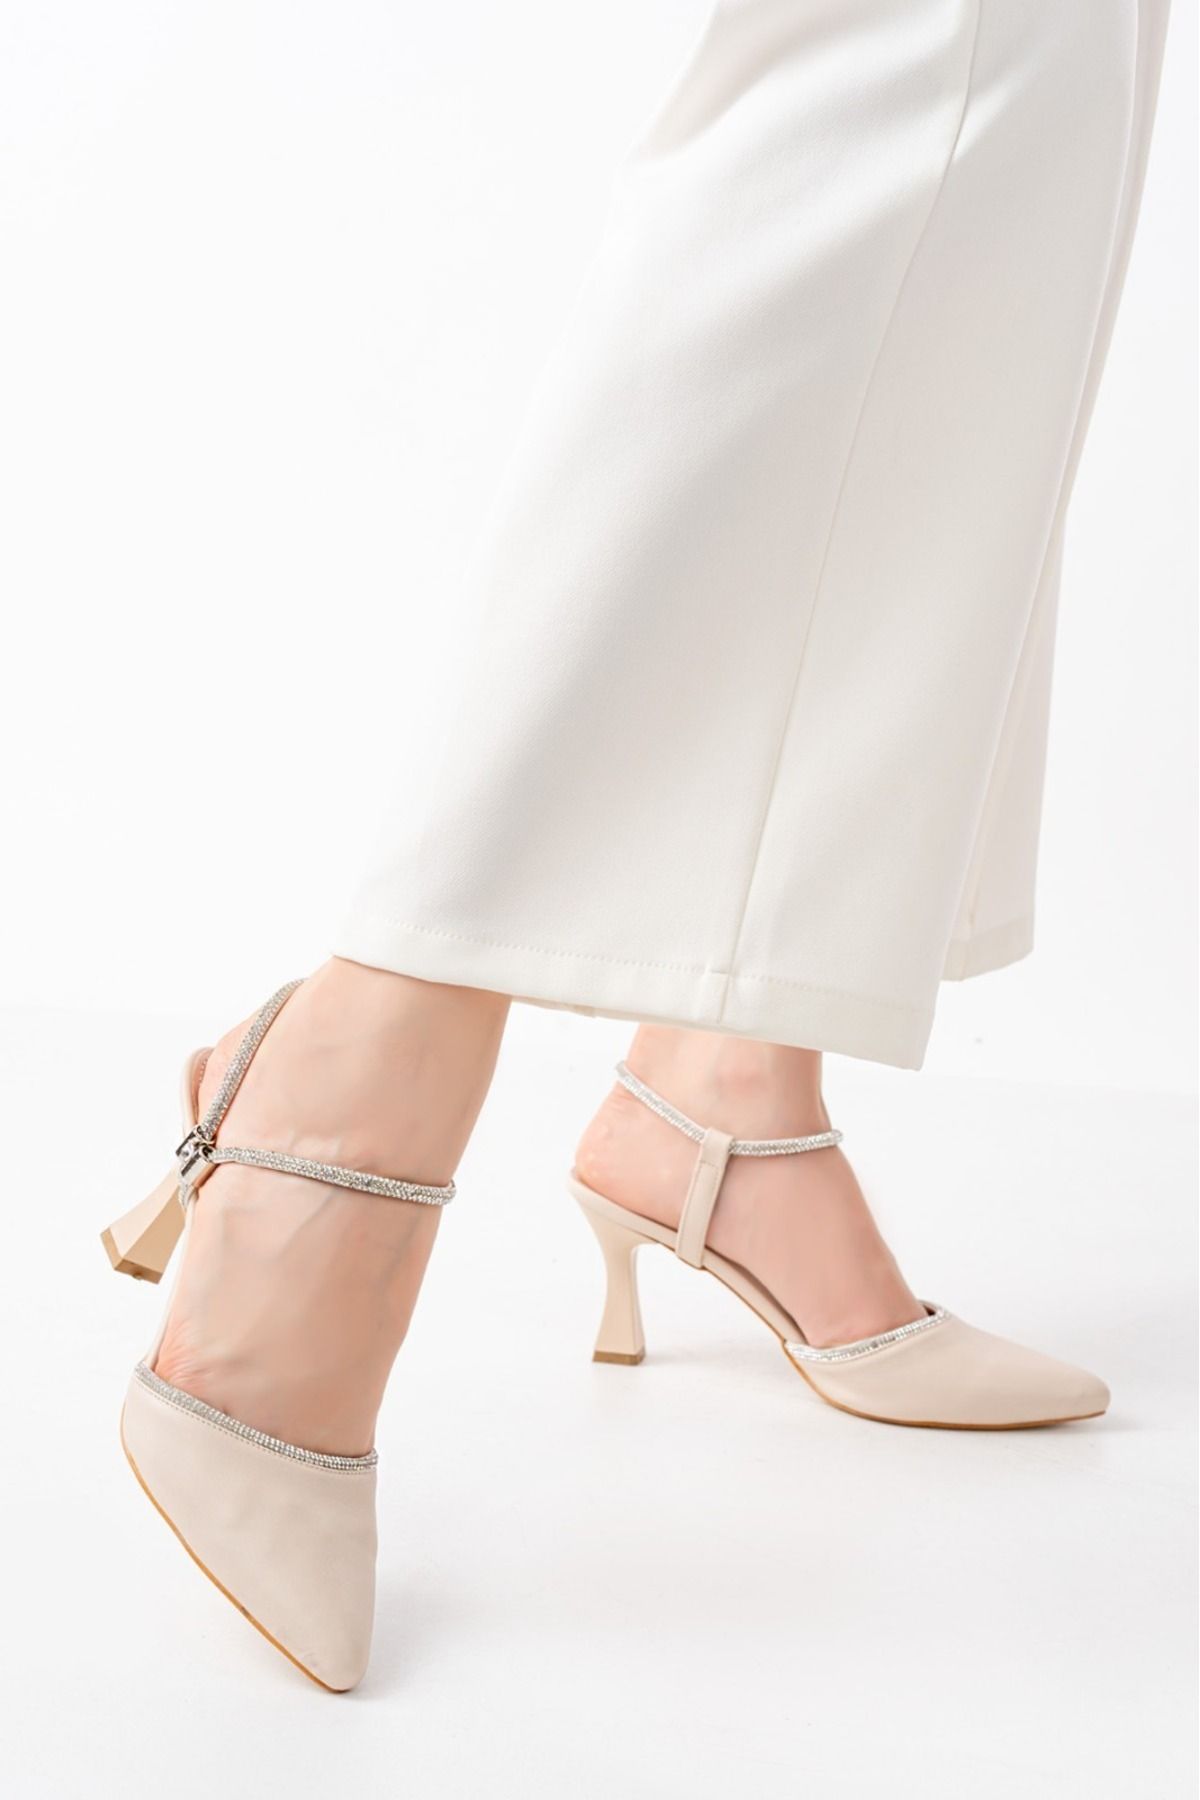 Fermoda Kadın Taşlı Stiletto Ten Rengi 7 Cm Topuklu Abiye Ayakkabı